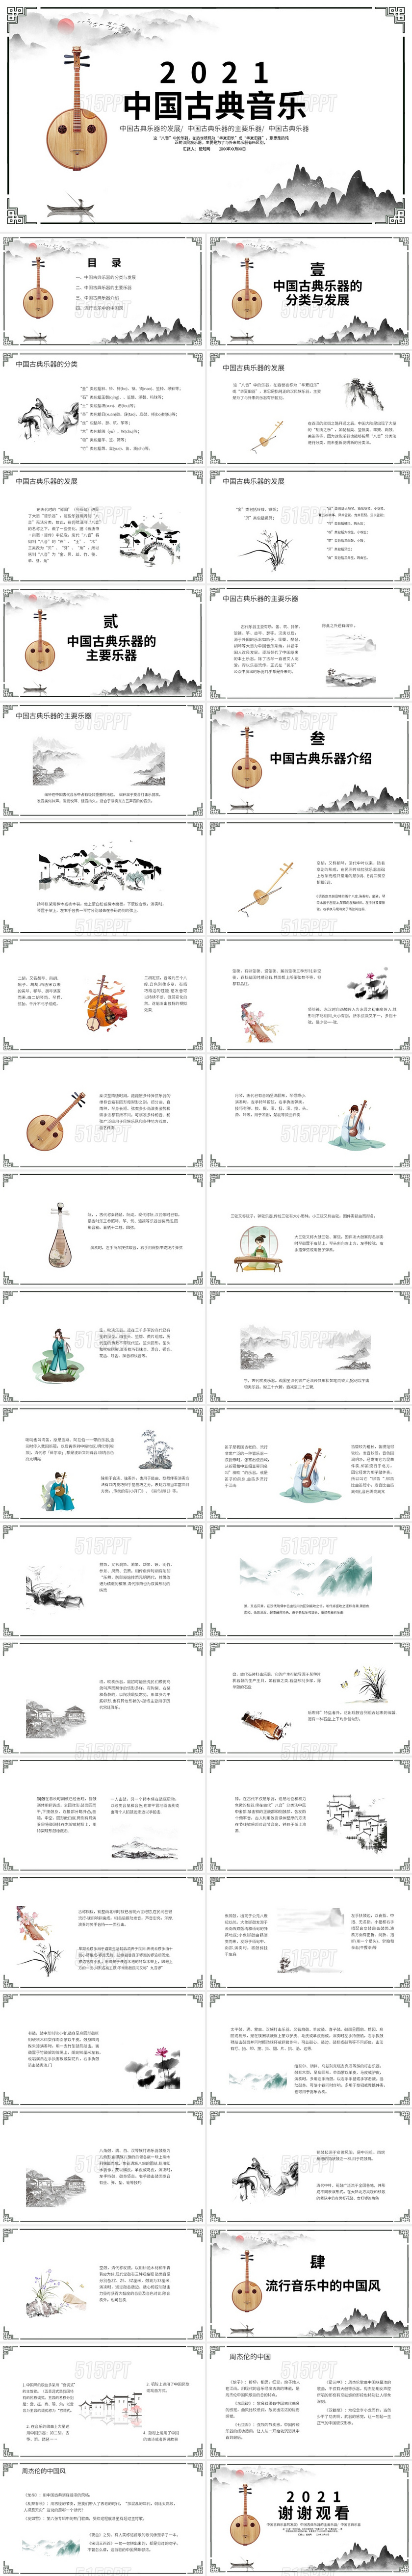 黑白水墨中国风中国传统音乐PPT模板PPT课件中国传统音乐 (2)